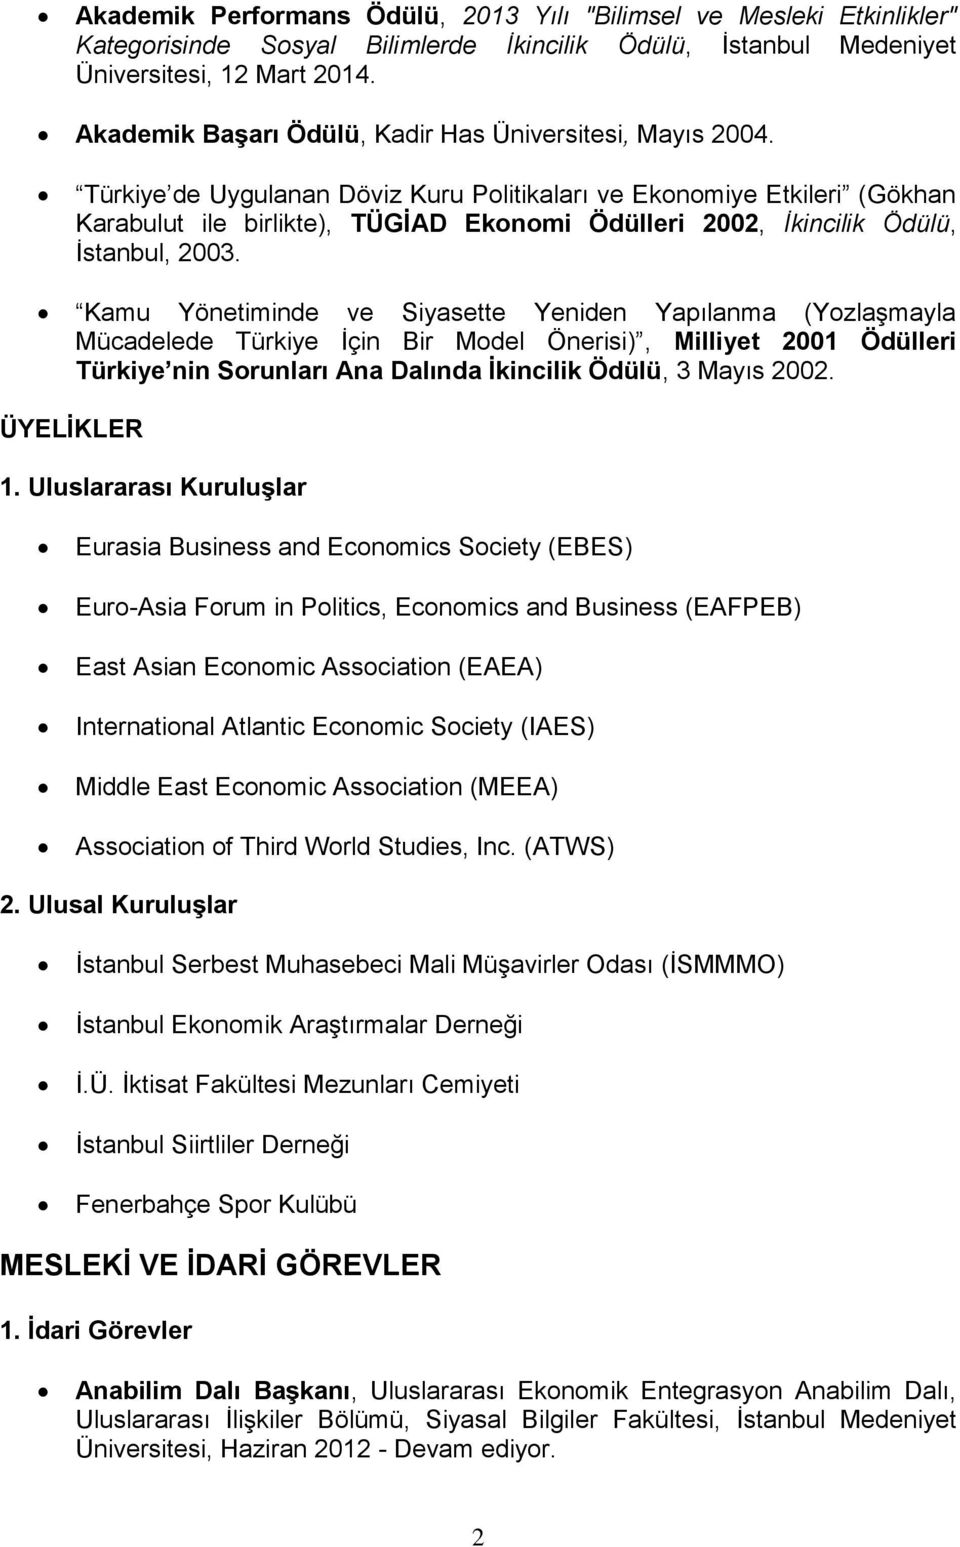 Türkiye de Uygulanan Döviz Kuru Politikaları ve Ekonomiye Etkileri (Gökhan Karabulut ile birlikte), TÜGİAD Ekonomi Ödülleri 2002, İkincilik Ödülü, İstanbul, 2003.